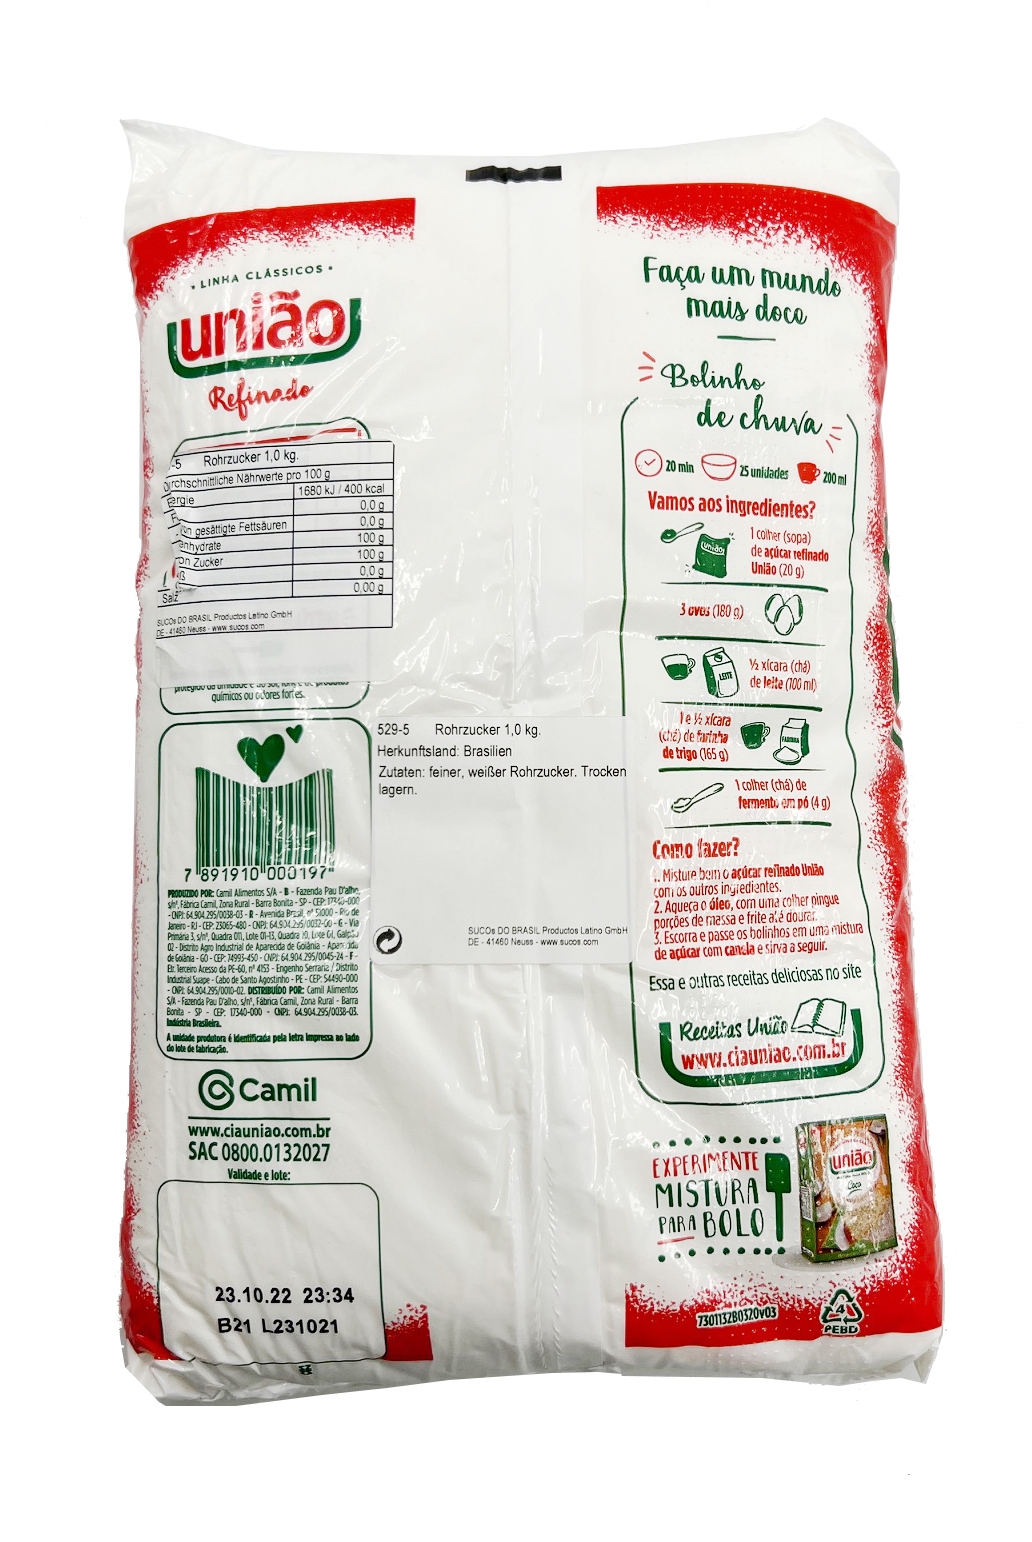 UNIAO - Weißer Rohrzucker Acucar Refinado - 1kg